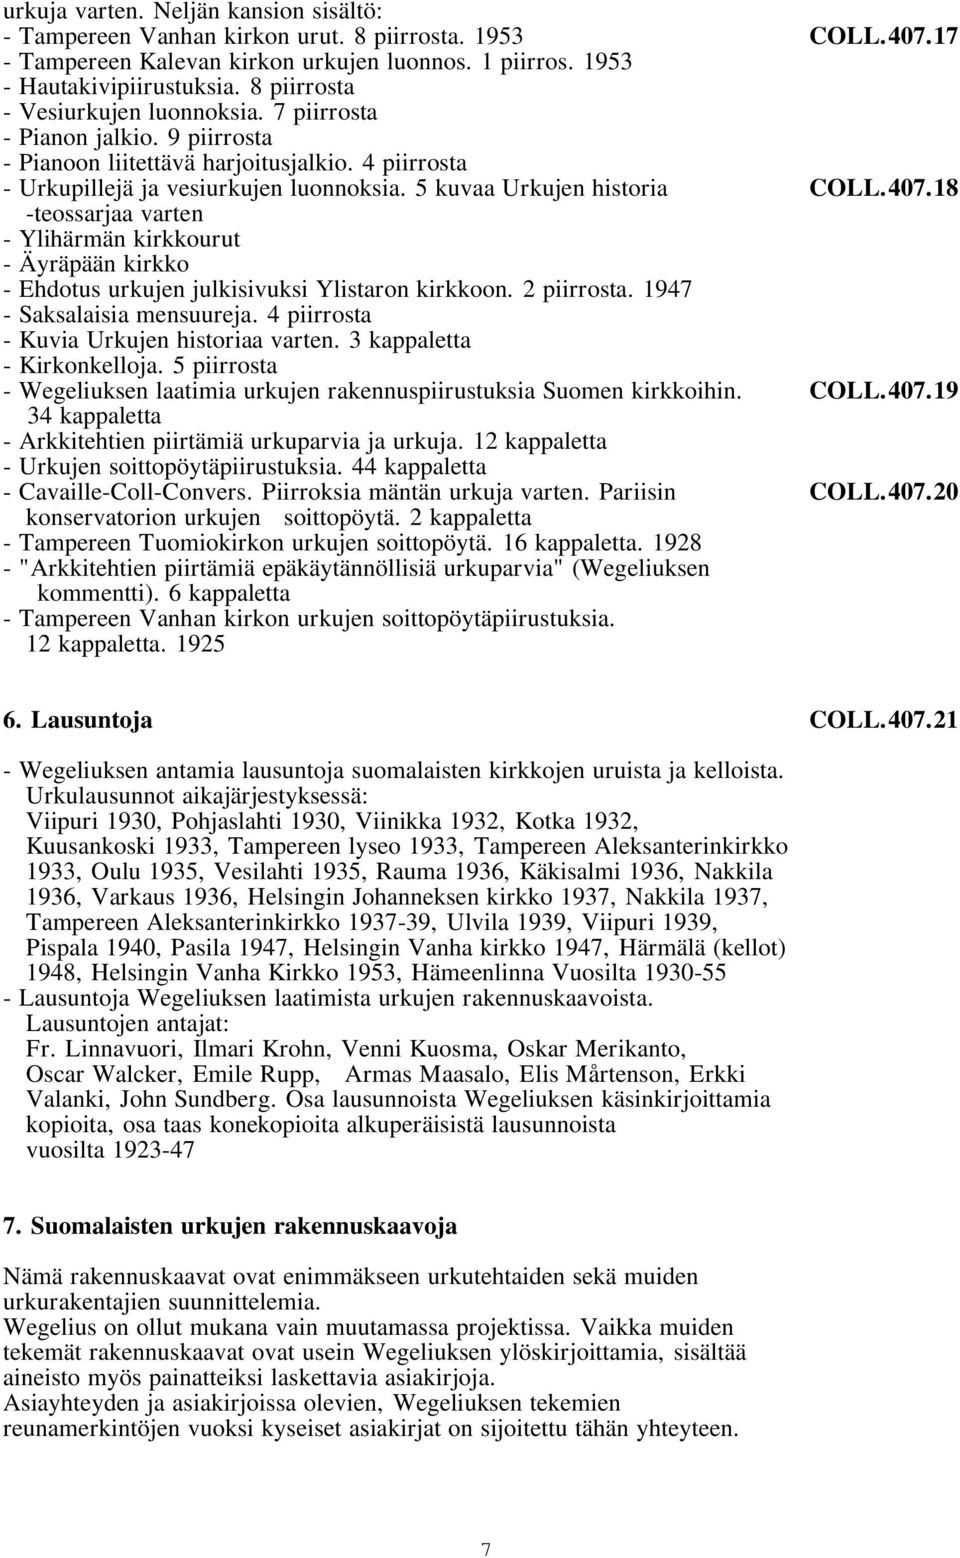 407.18 -teossarjaa varten - Ylihärmän kirkkourut - Äyräpään kirkko - Ehdotus urkujen julkisivuksi Ylistaron kirkkoon. 2 piirrosta. 1947 - Saksalaisia mensuureja.